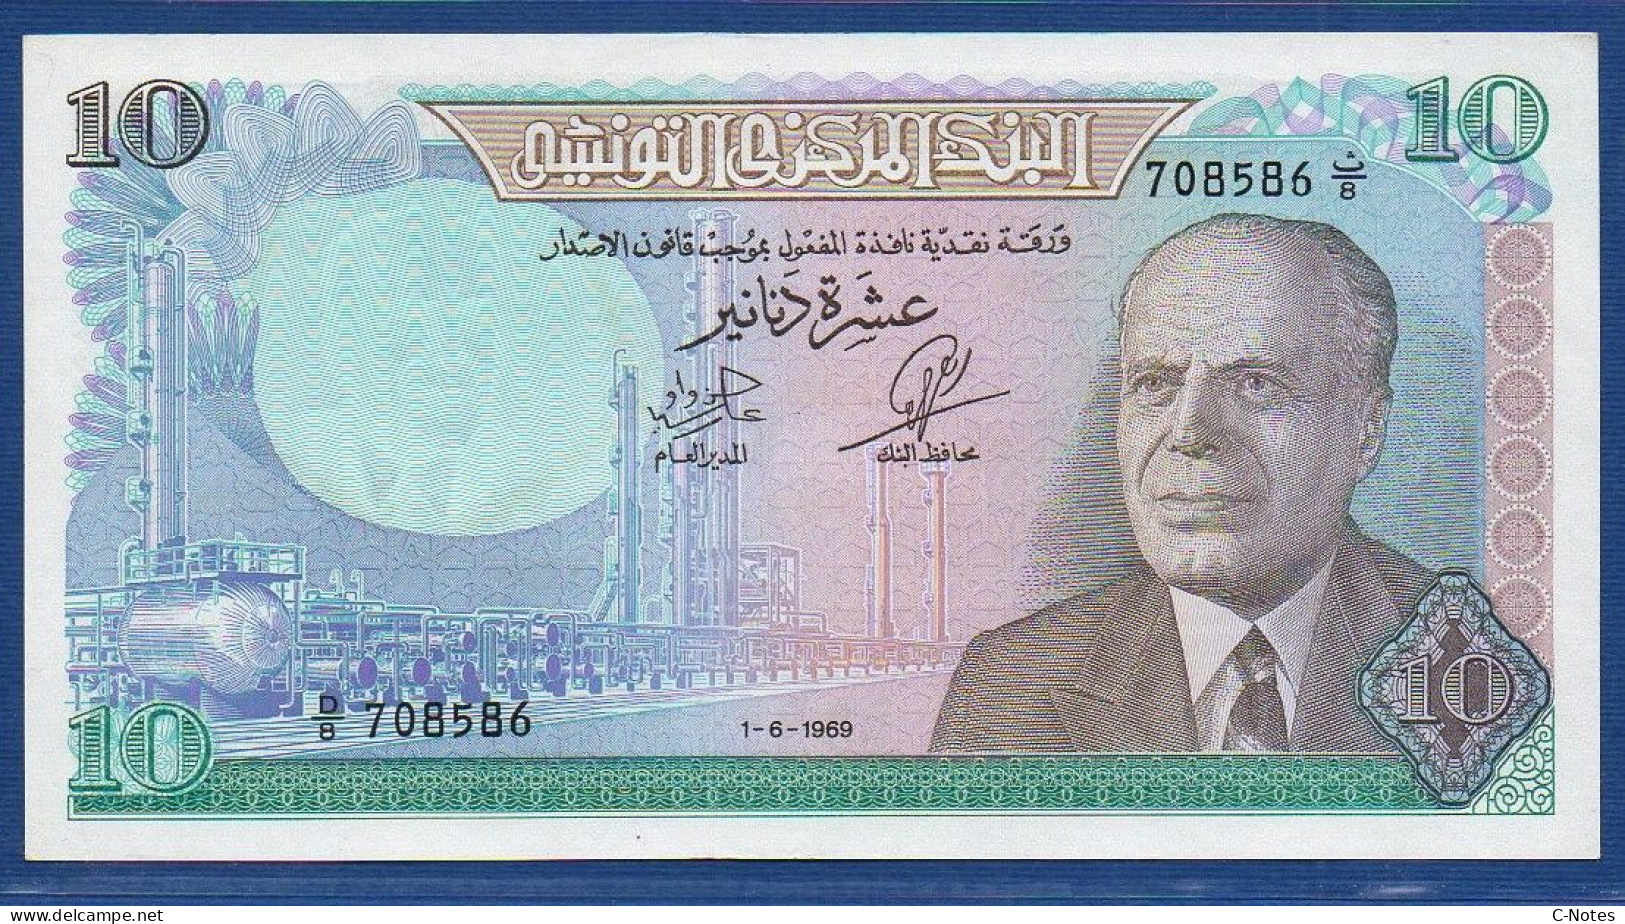 TUNISIA - P.65 – 10 Dinars 1969 UNC, S/n D/8 708586 - Tunisie